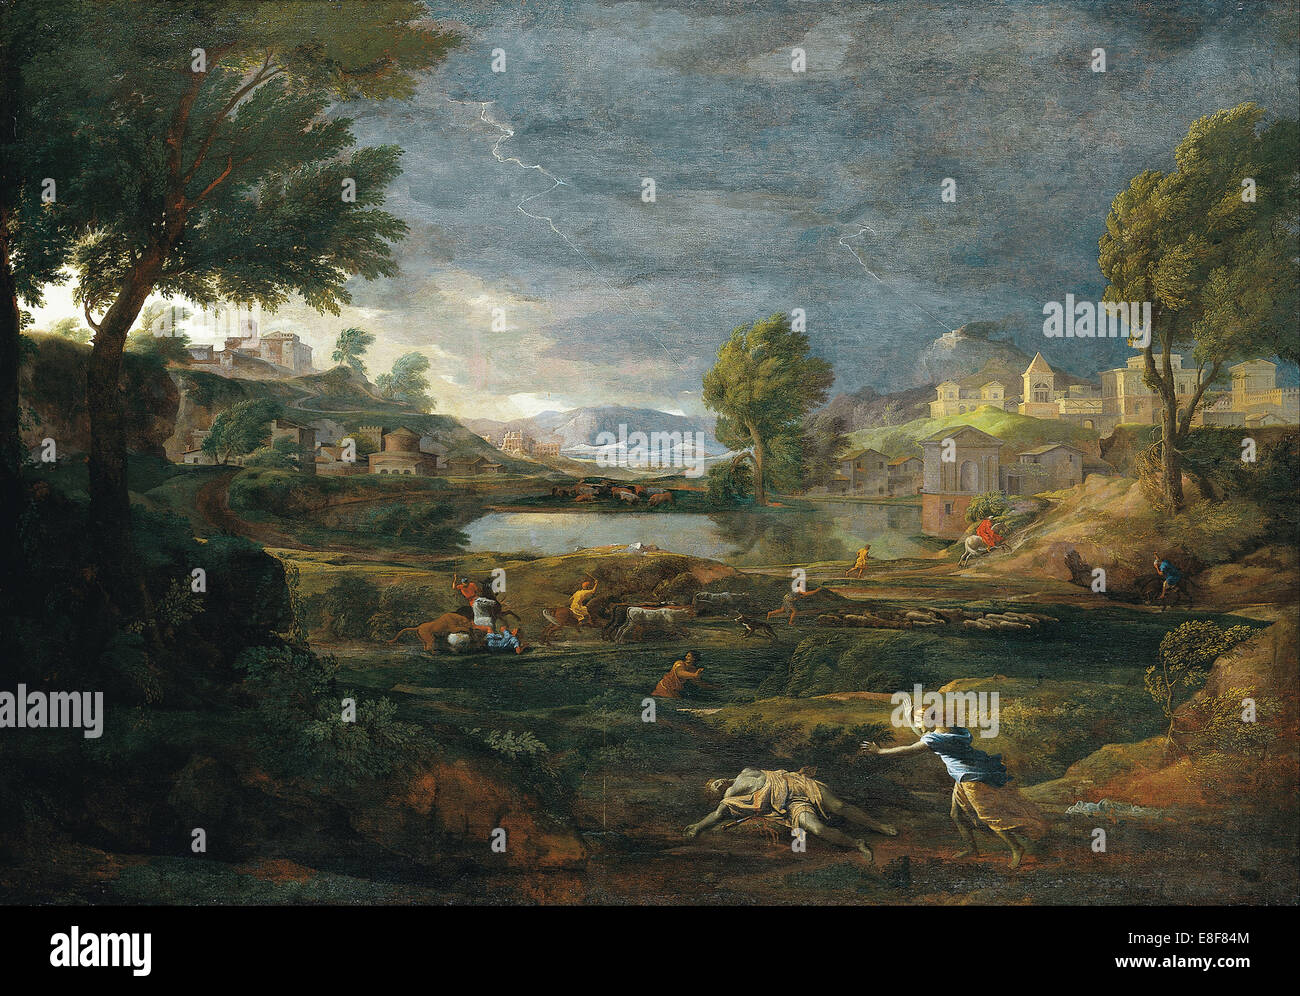 Paysage au cours d'un orage avec Pyramus et Thisbe. Artiste : Poussin, Nicolas (1594-1665) Banque D'Images